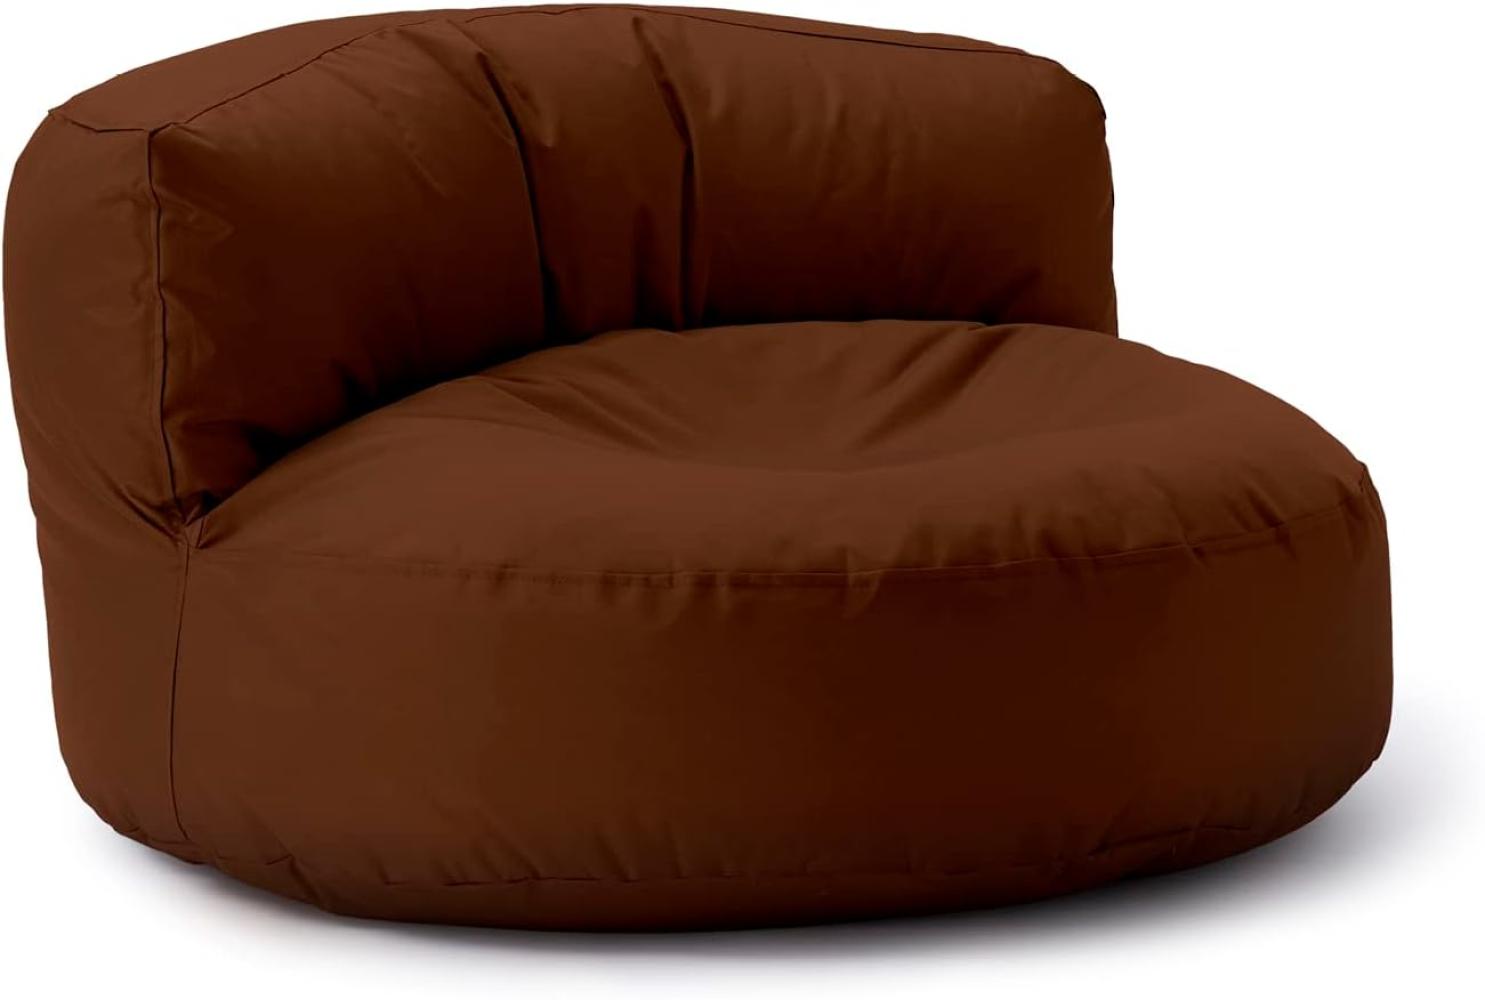 Lumaland Outdoor Sitzsack-Lounge, Rundes Sitzsack-Sofa für draußen, 320l Füllung, 90 x 50 cm, Braun Bild 1